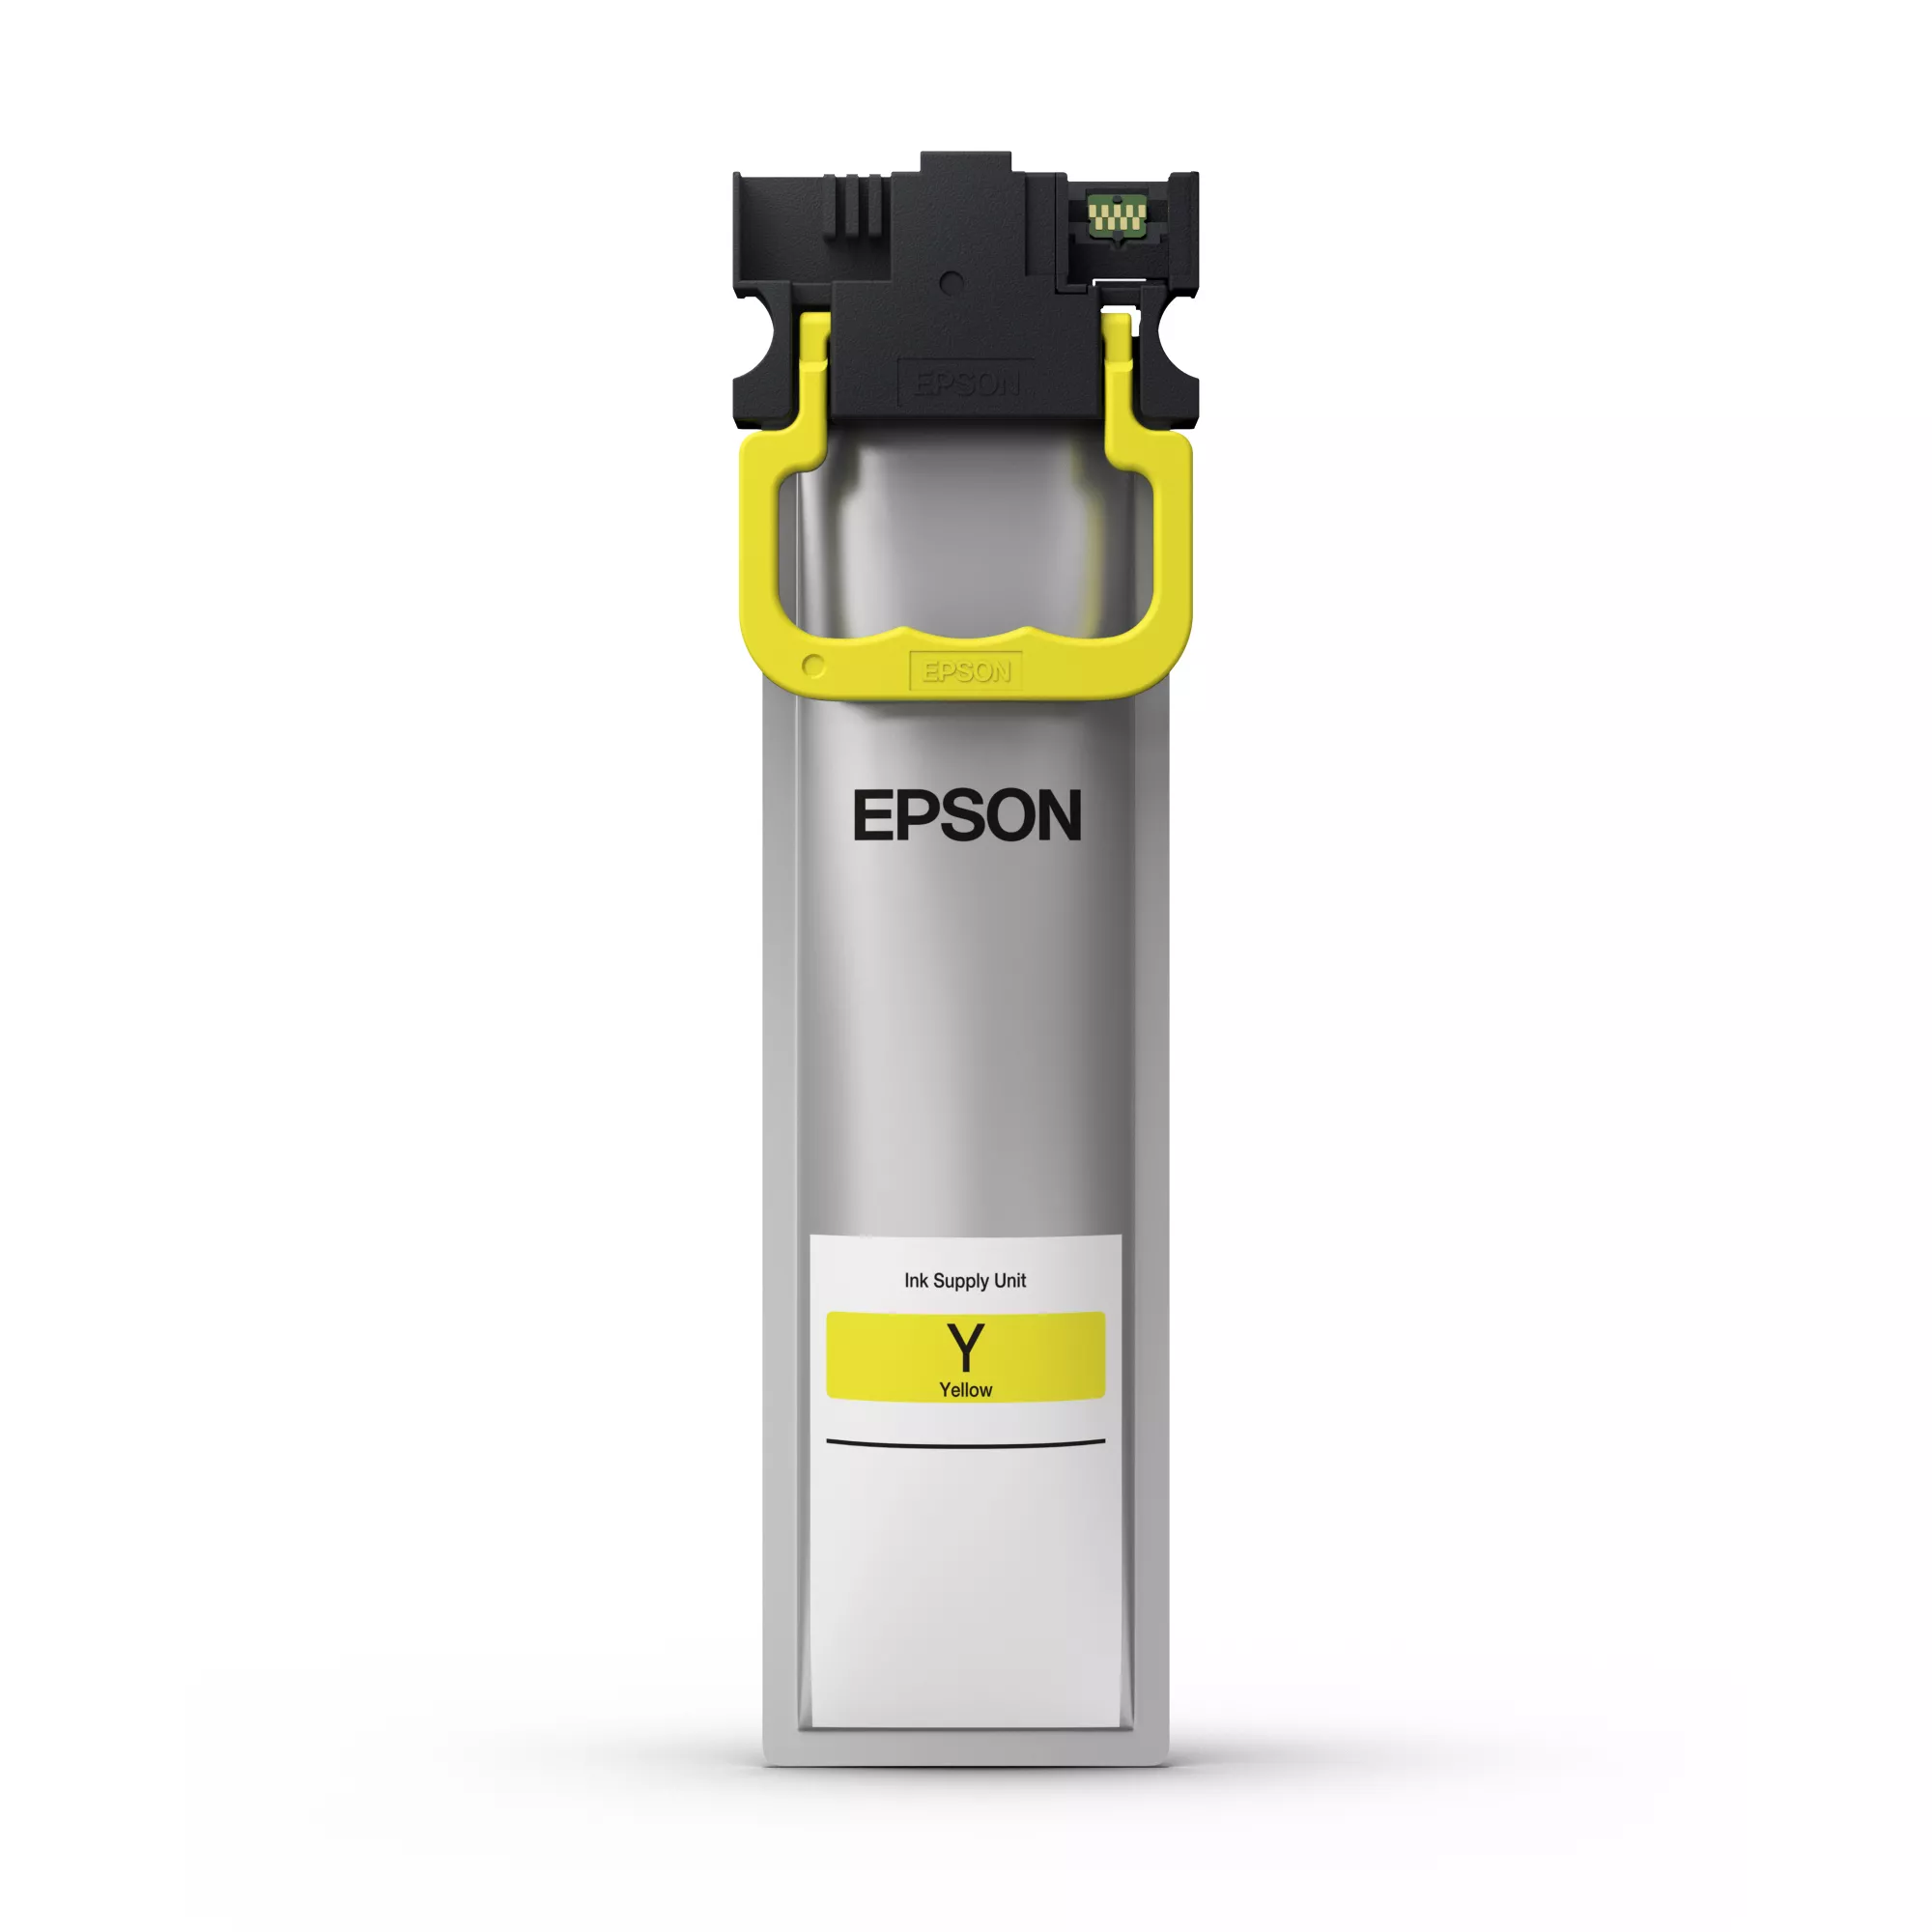 Achat EPSON WF-C5xxx Series Ink Cartridge L Yellow 3000s et autres produits de la marque Epson